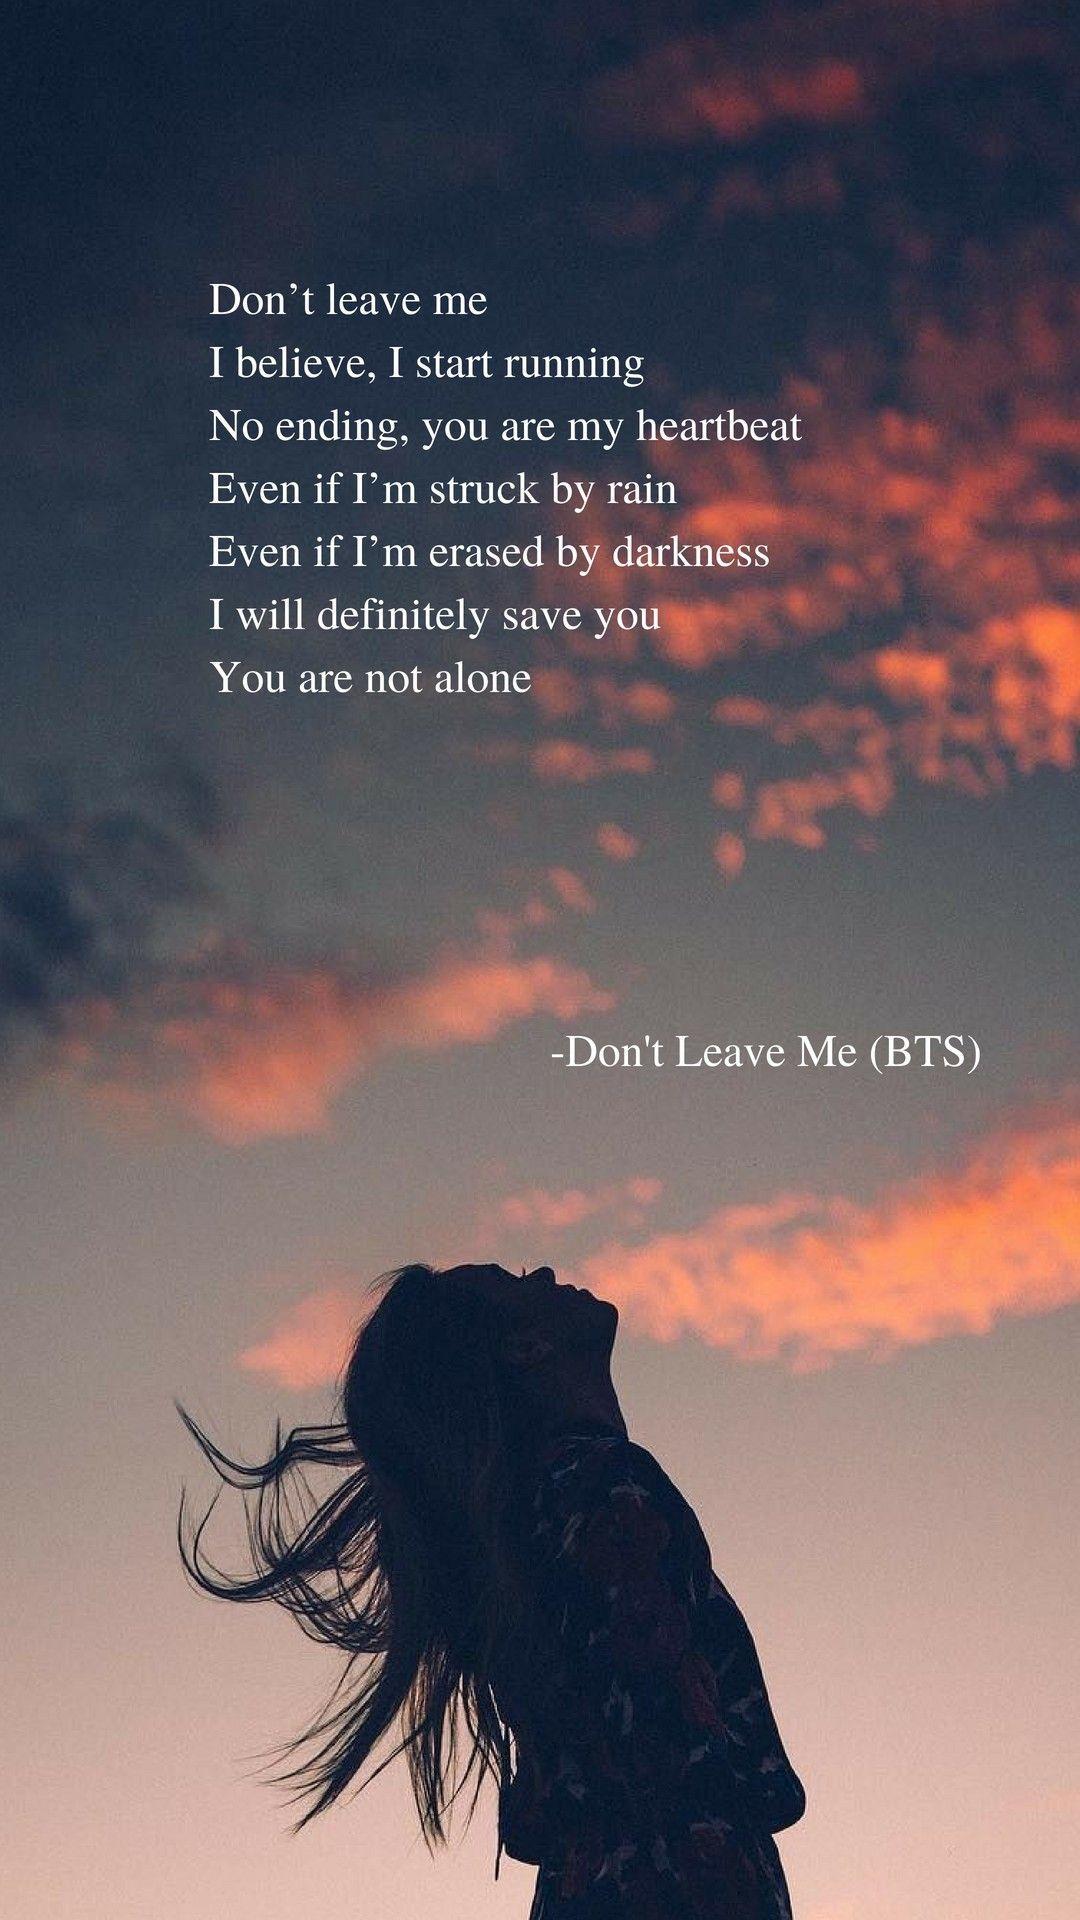 Don't Leave Me (BTS) lyrics wallpaper. Letras de musicas, Musicas